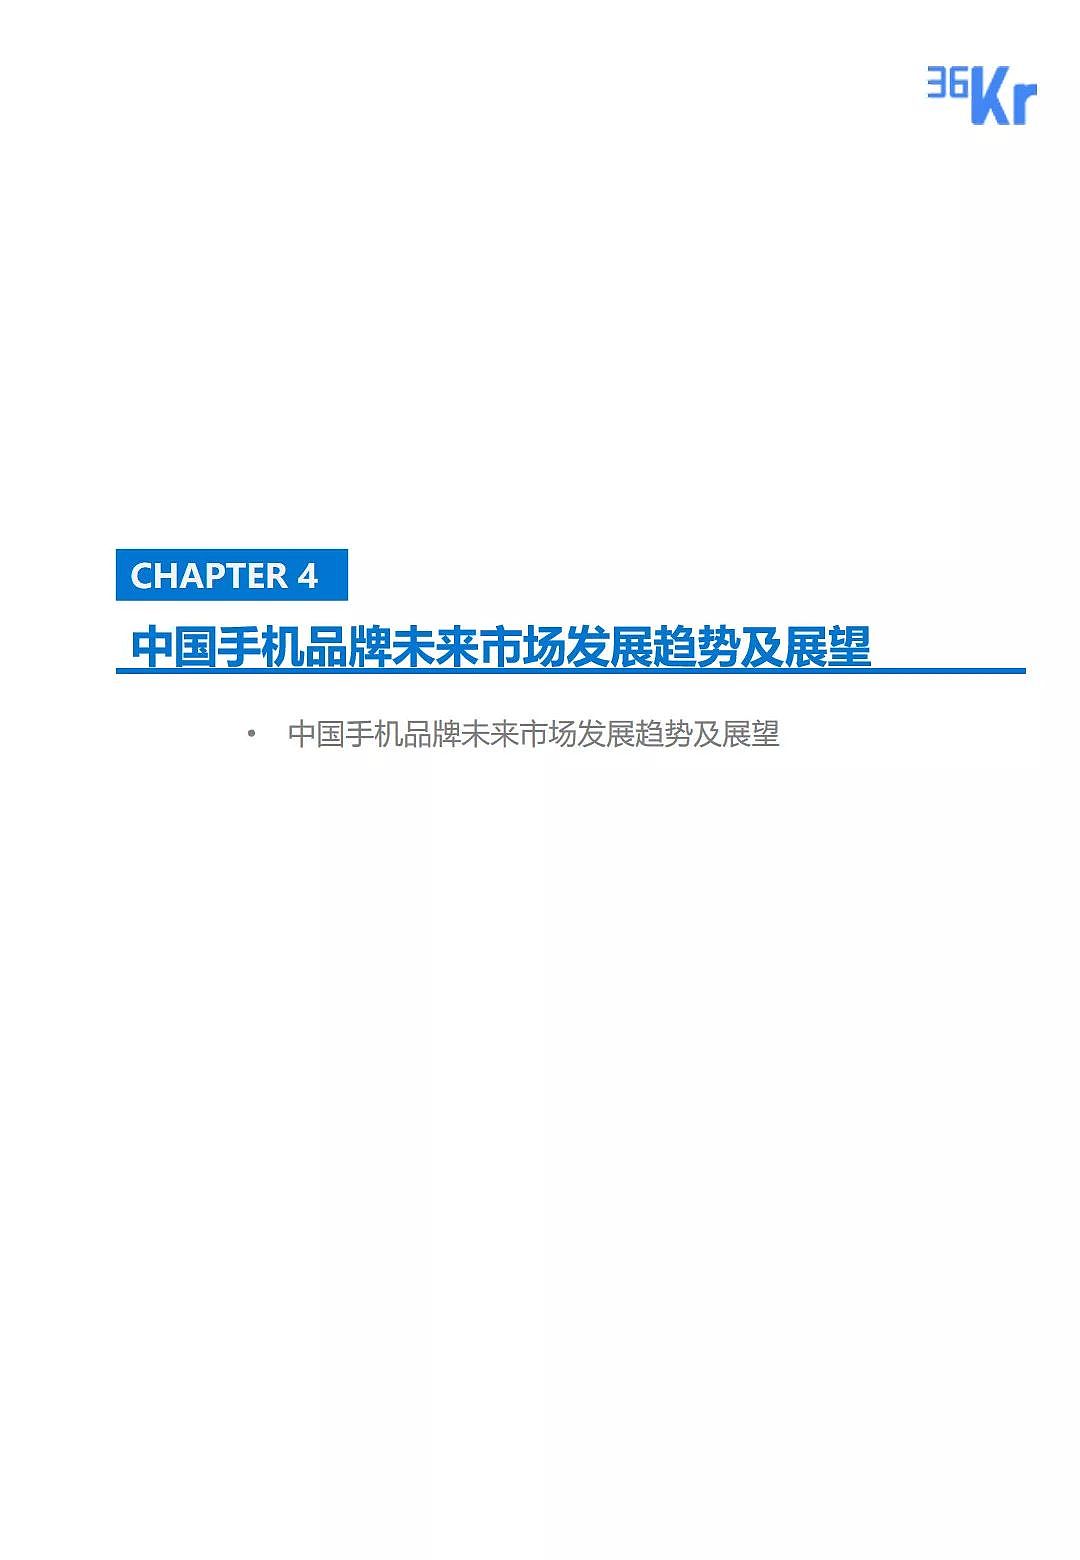 中国手机品牌市场营销研究报告 | 36氪研究 - 31